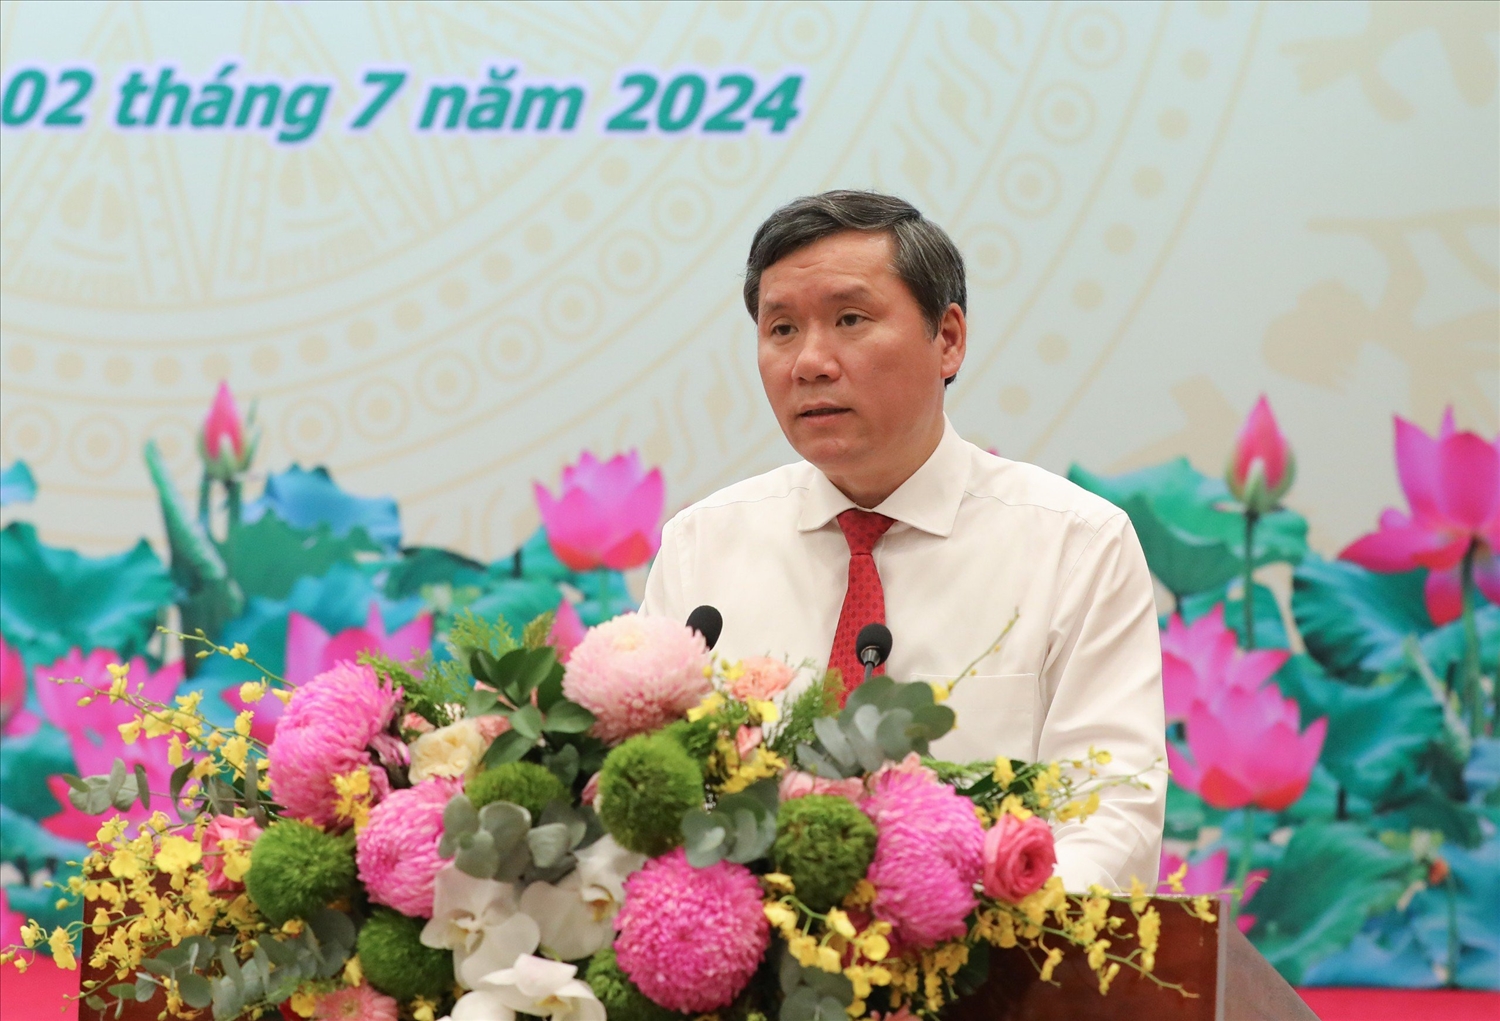 Phó Giám đốc Học viện Chính trị Quốc gia Hồ Chí Minh Lê Văn Lợi phát biểu bế mạc Hội thảo